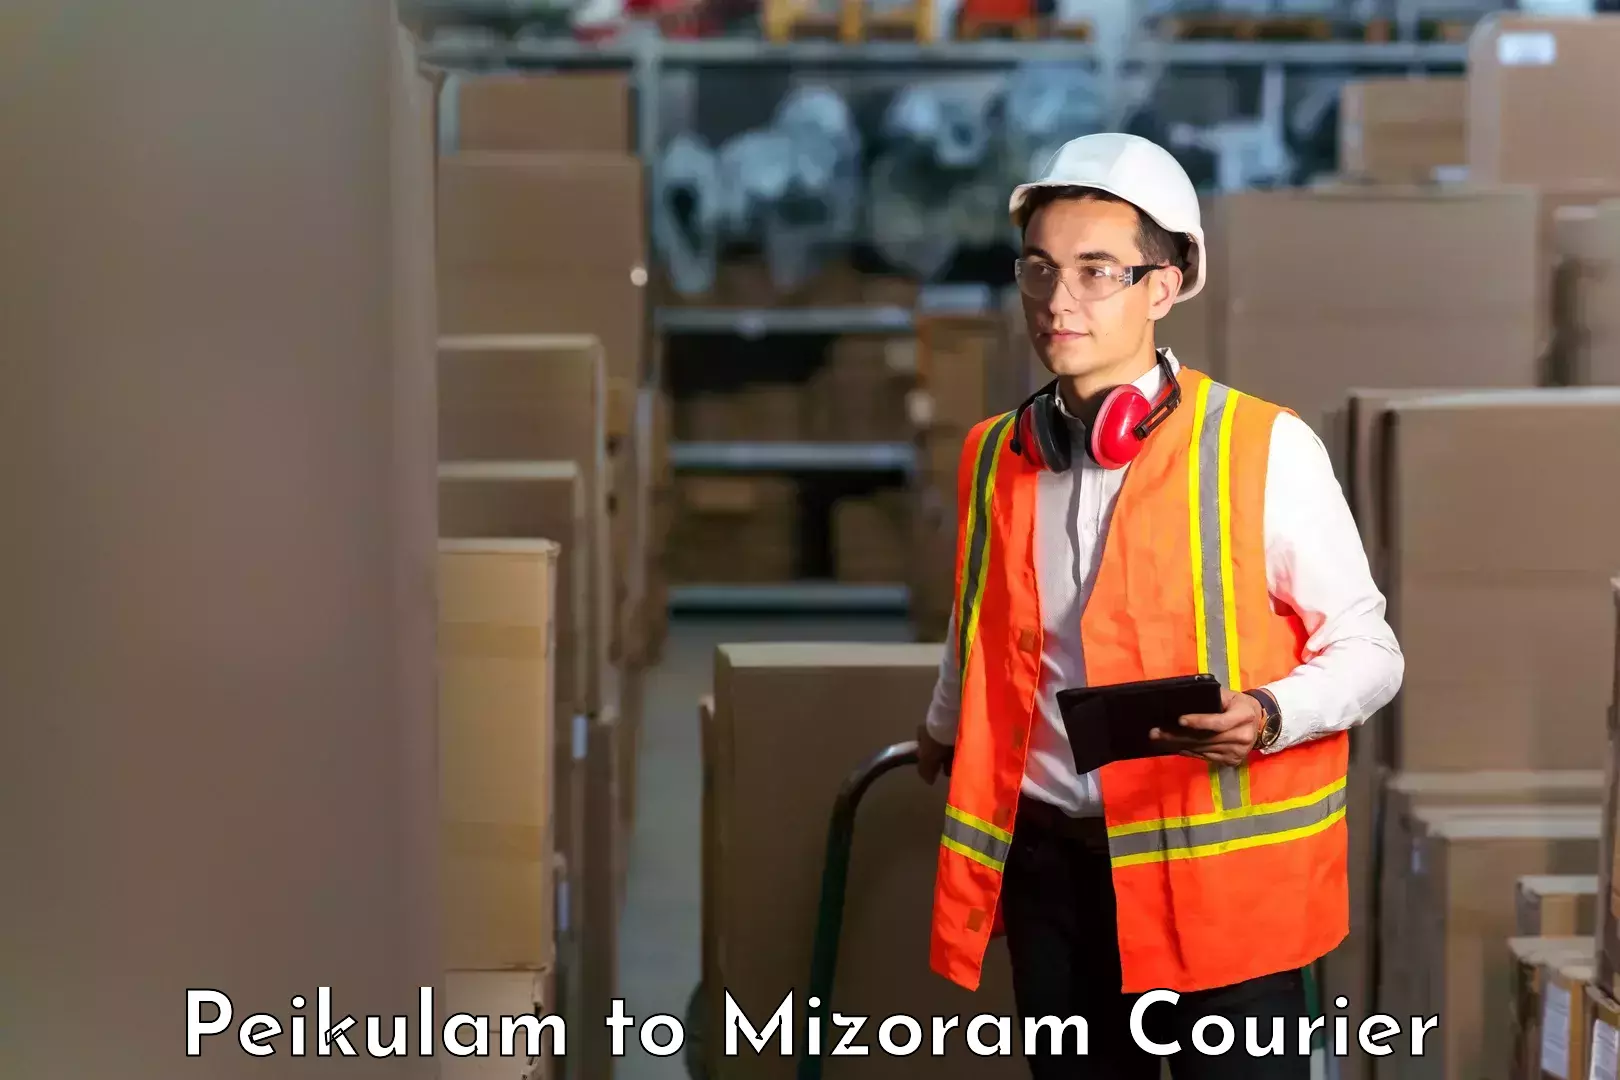 Business shipping needs Peikulam to Mizoram